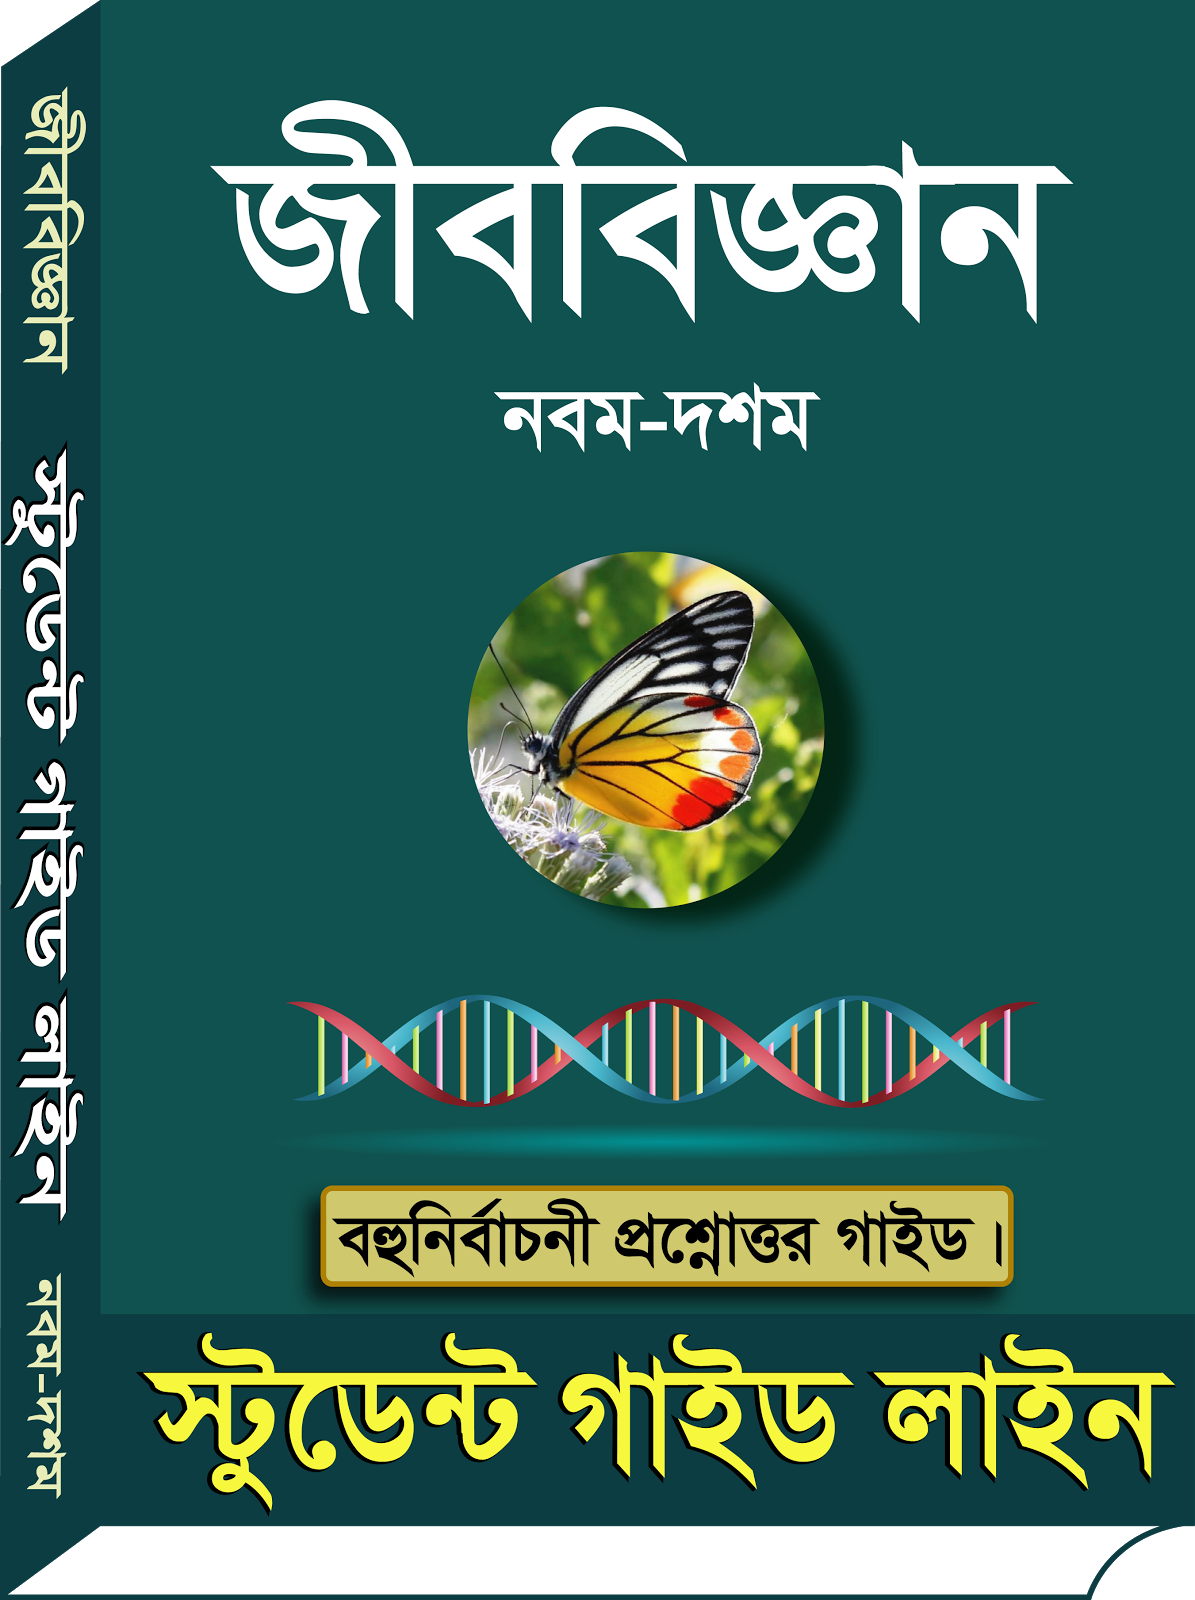 Bangla computer hardware book pdf free download